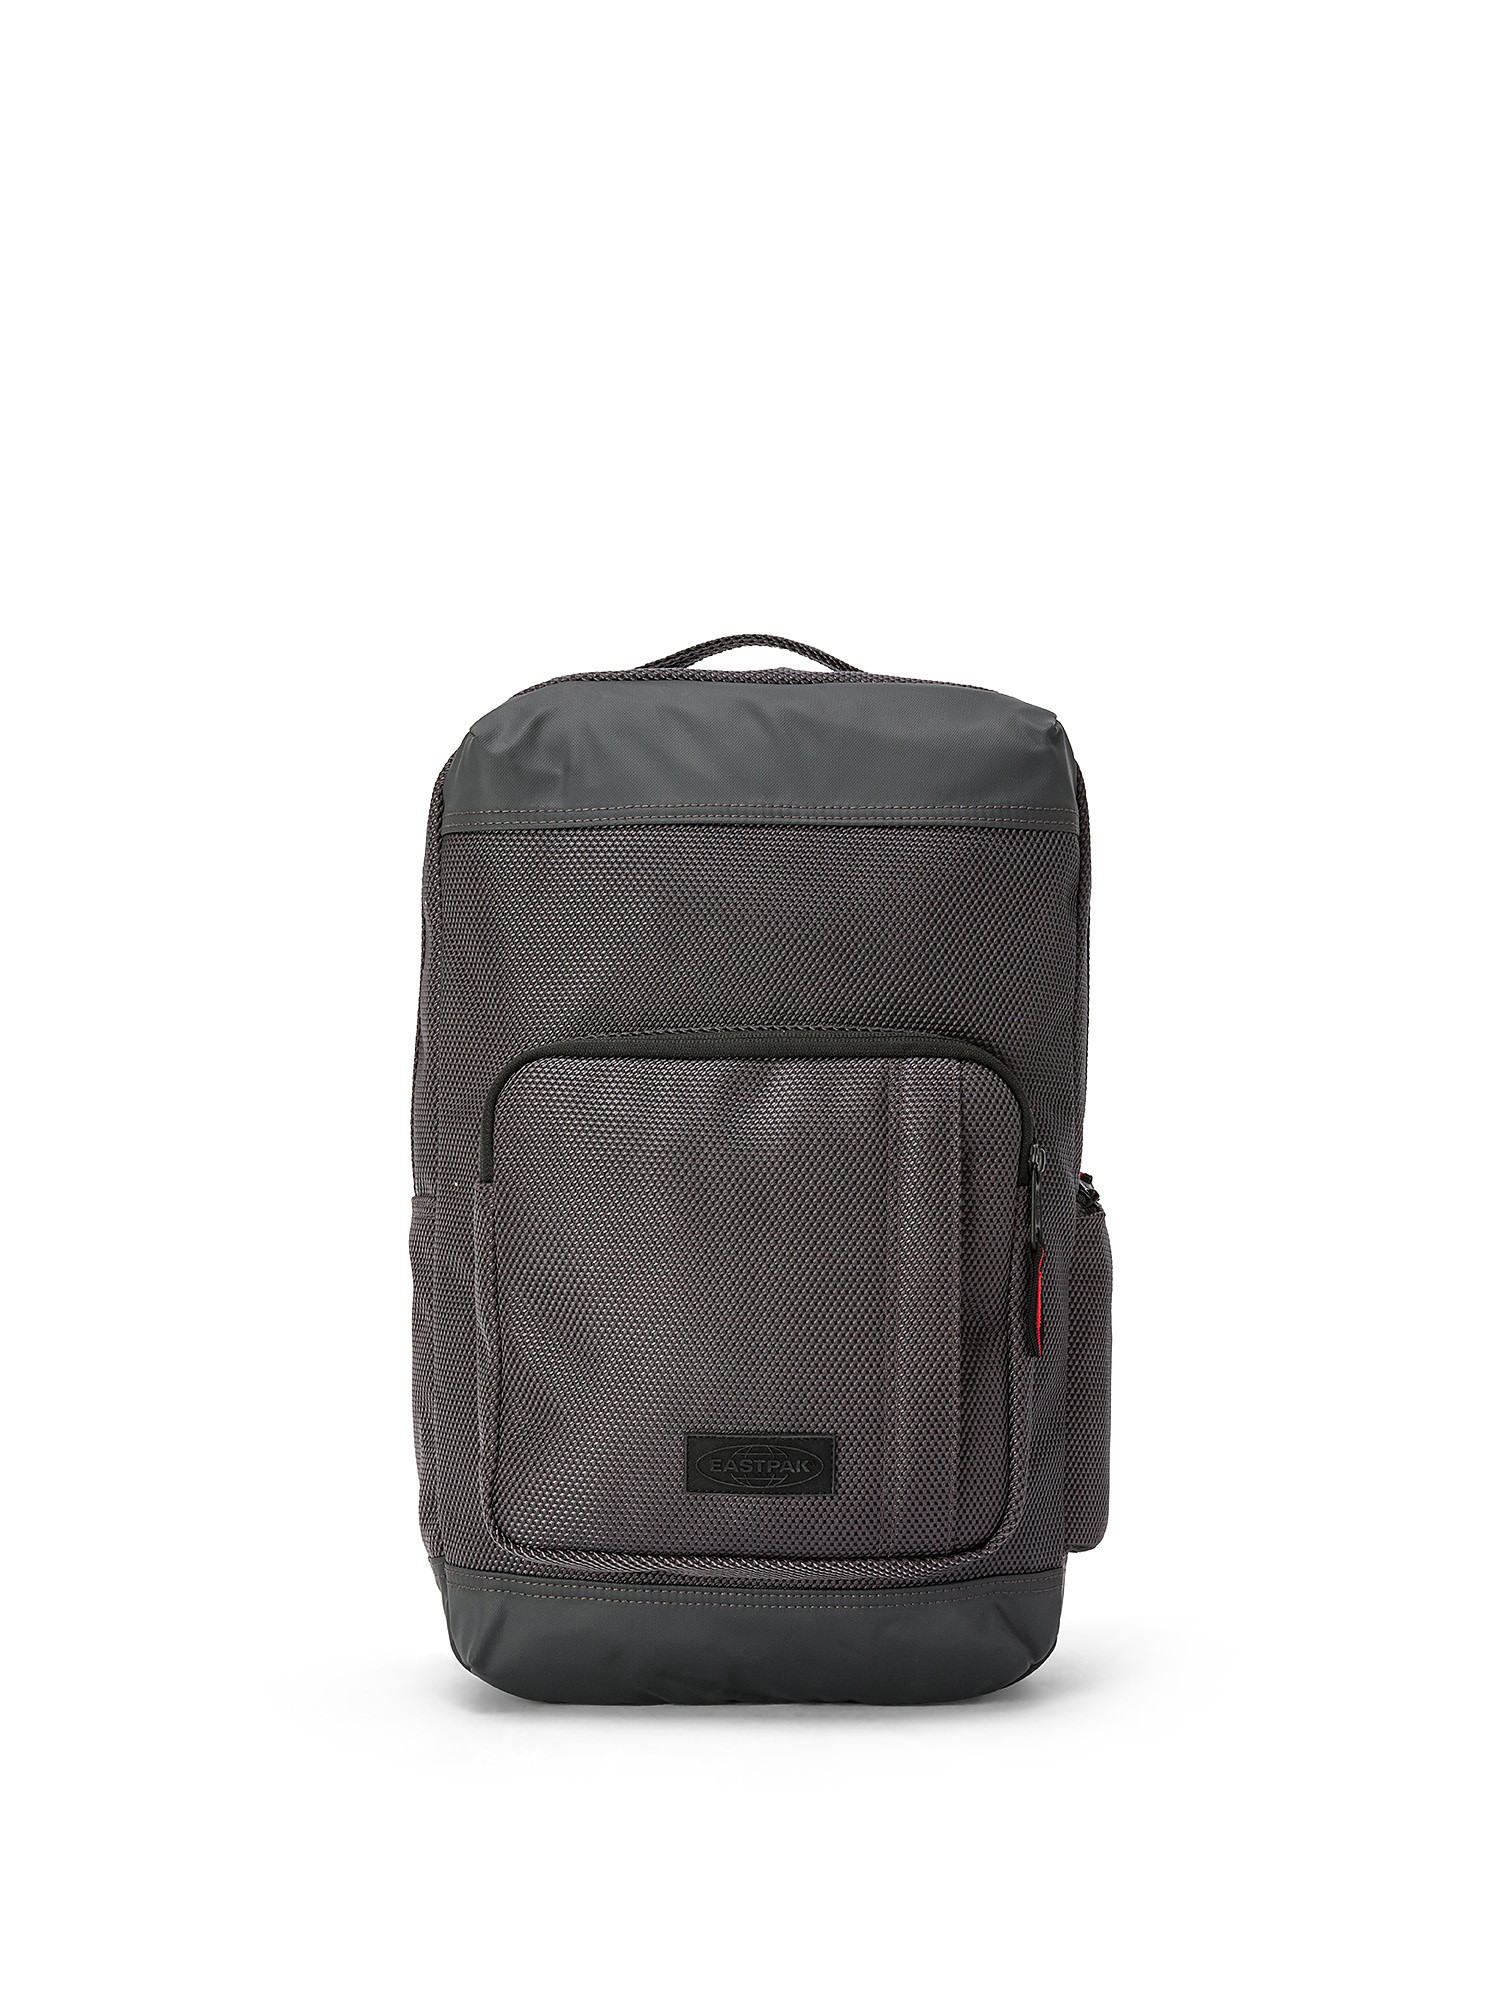 Eastpak - Tecum S Backpack, Grey, large image number 0